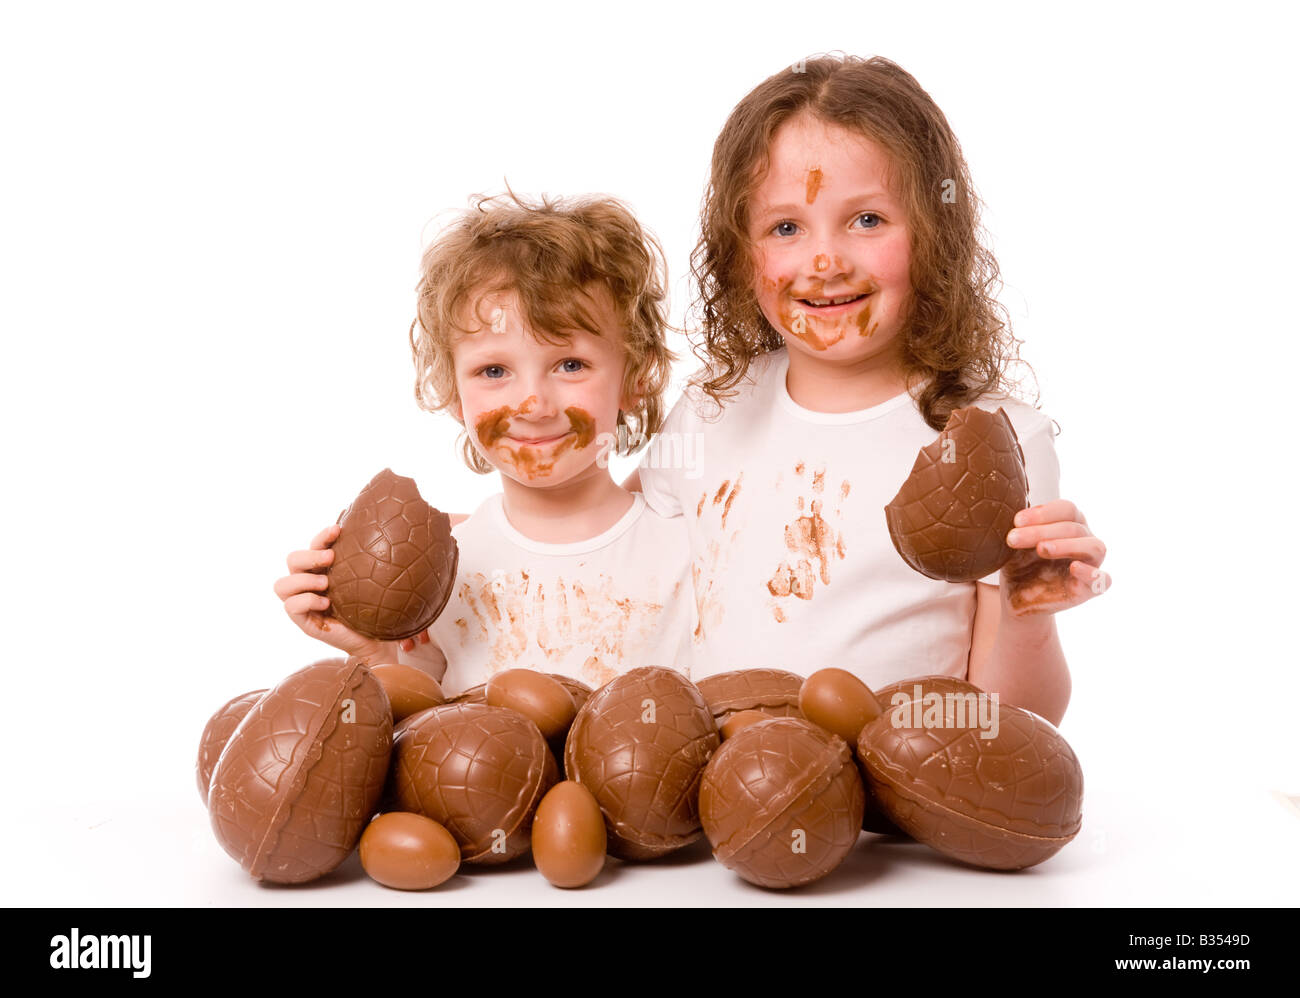 2 bambini piccoli con il cioccolato sul viso e sui vestiti, ciascuno con un pezzo di uovo di cioccolato, con molte altre uova di Pasqua in primo piano. Foto Stock